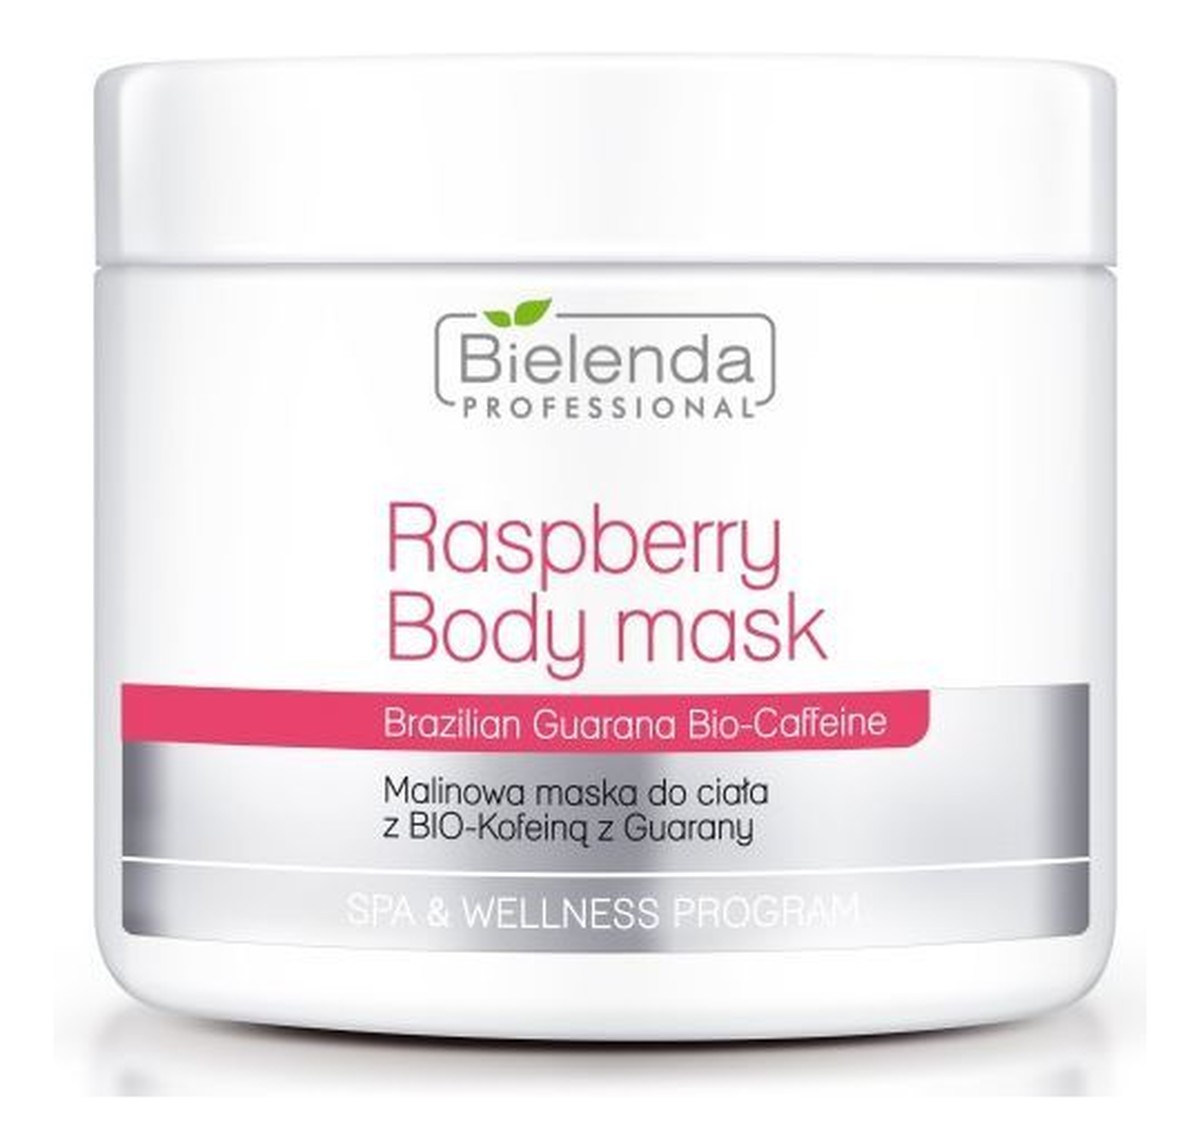 Raspberry Body Mask malinowa maska do ciała z bio-kofeiną z guarany